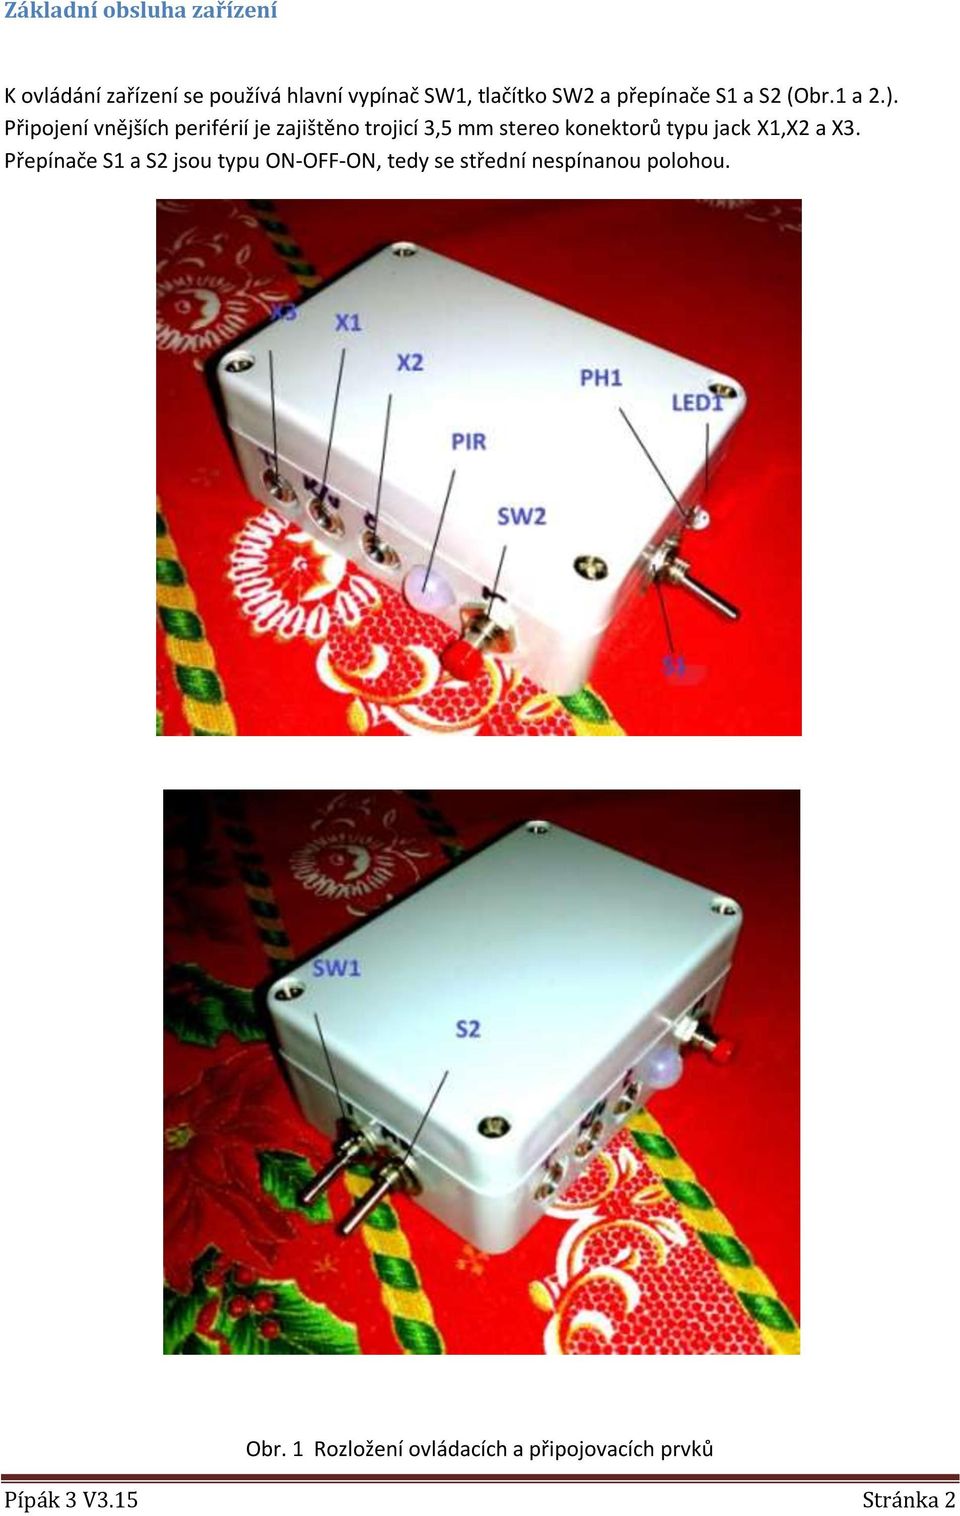 Připojení vnějších periférií je zajištěno trojicí 3,5 mm stereo konektorů typu jack X1,X2 a